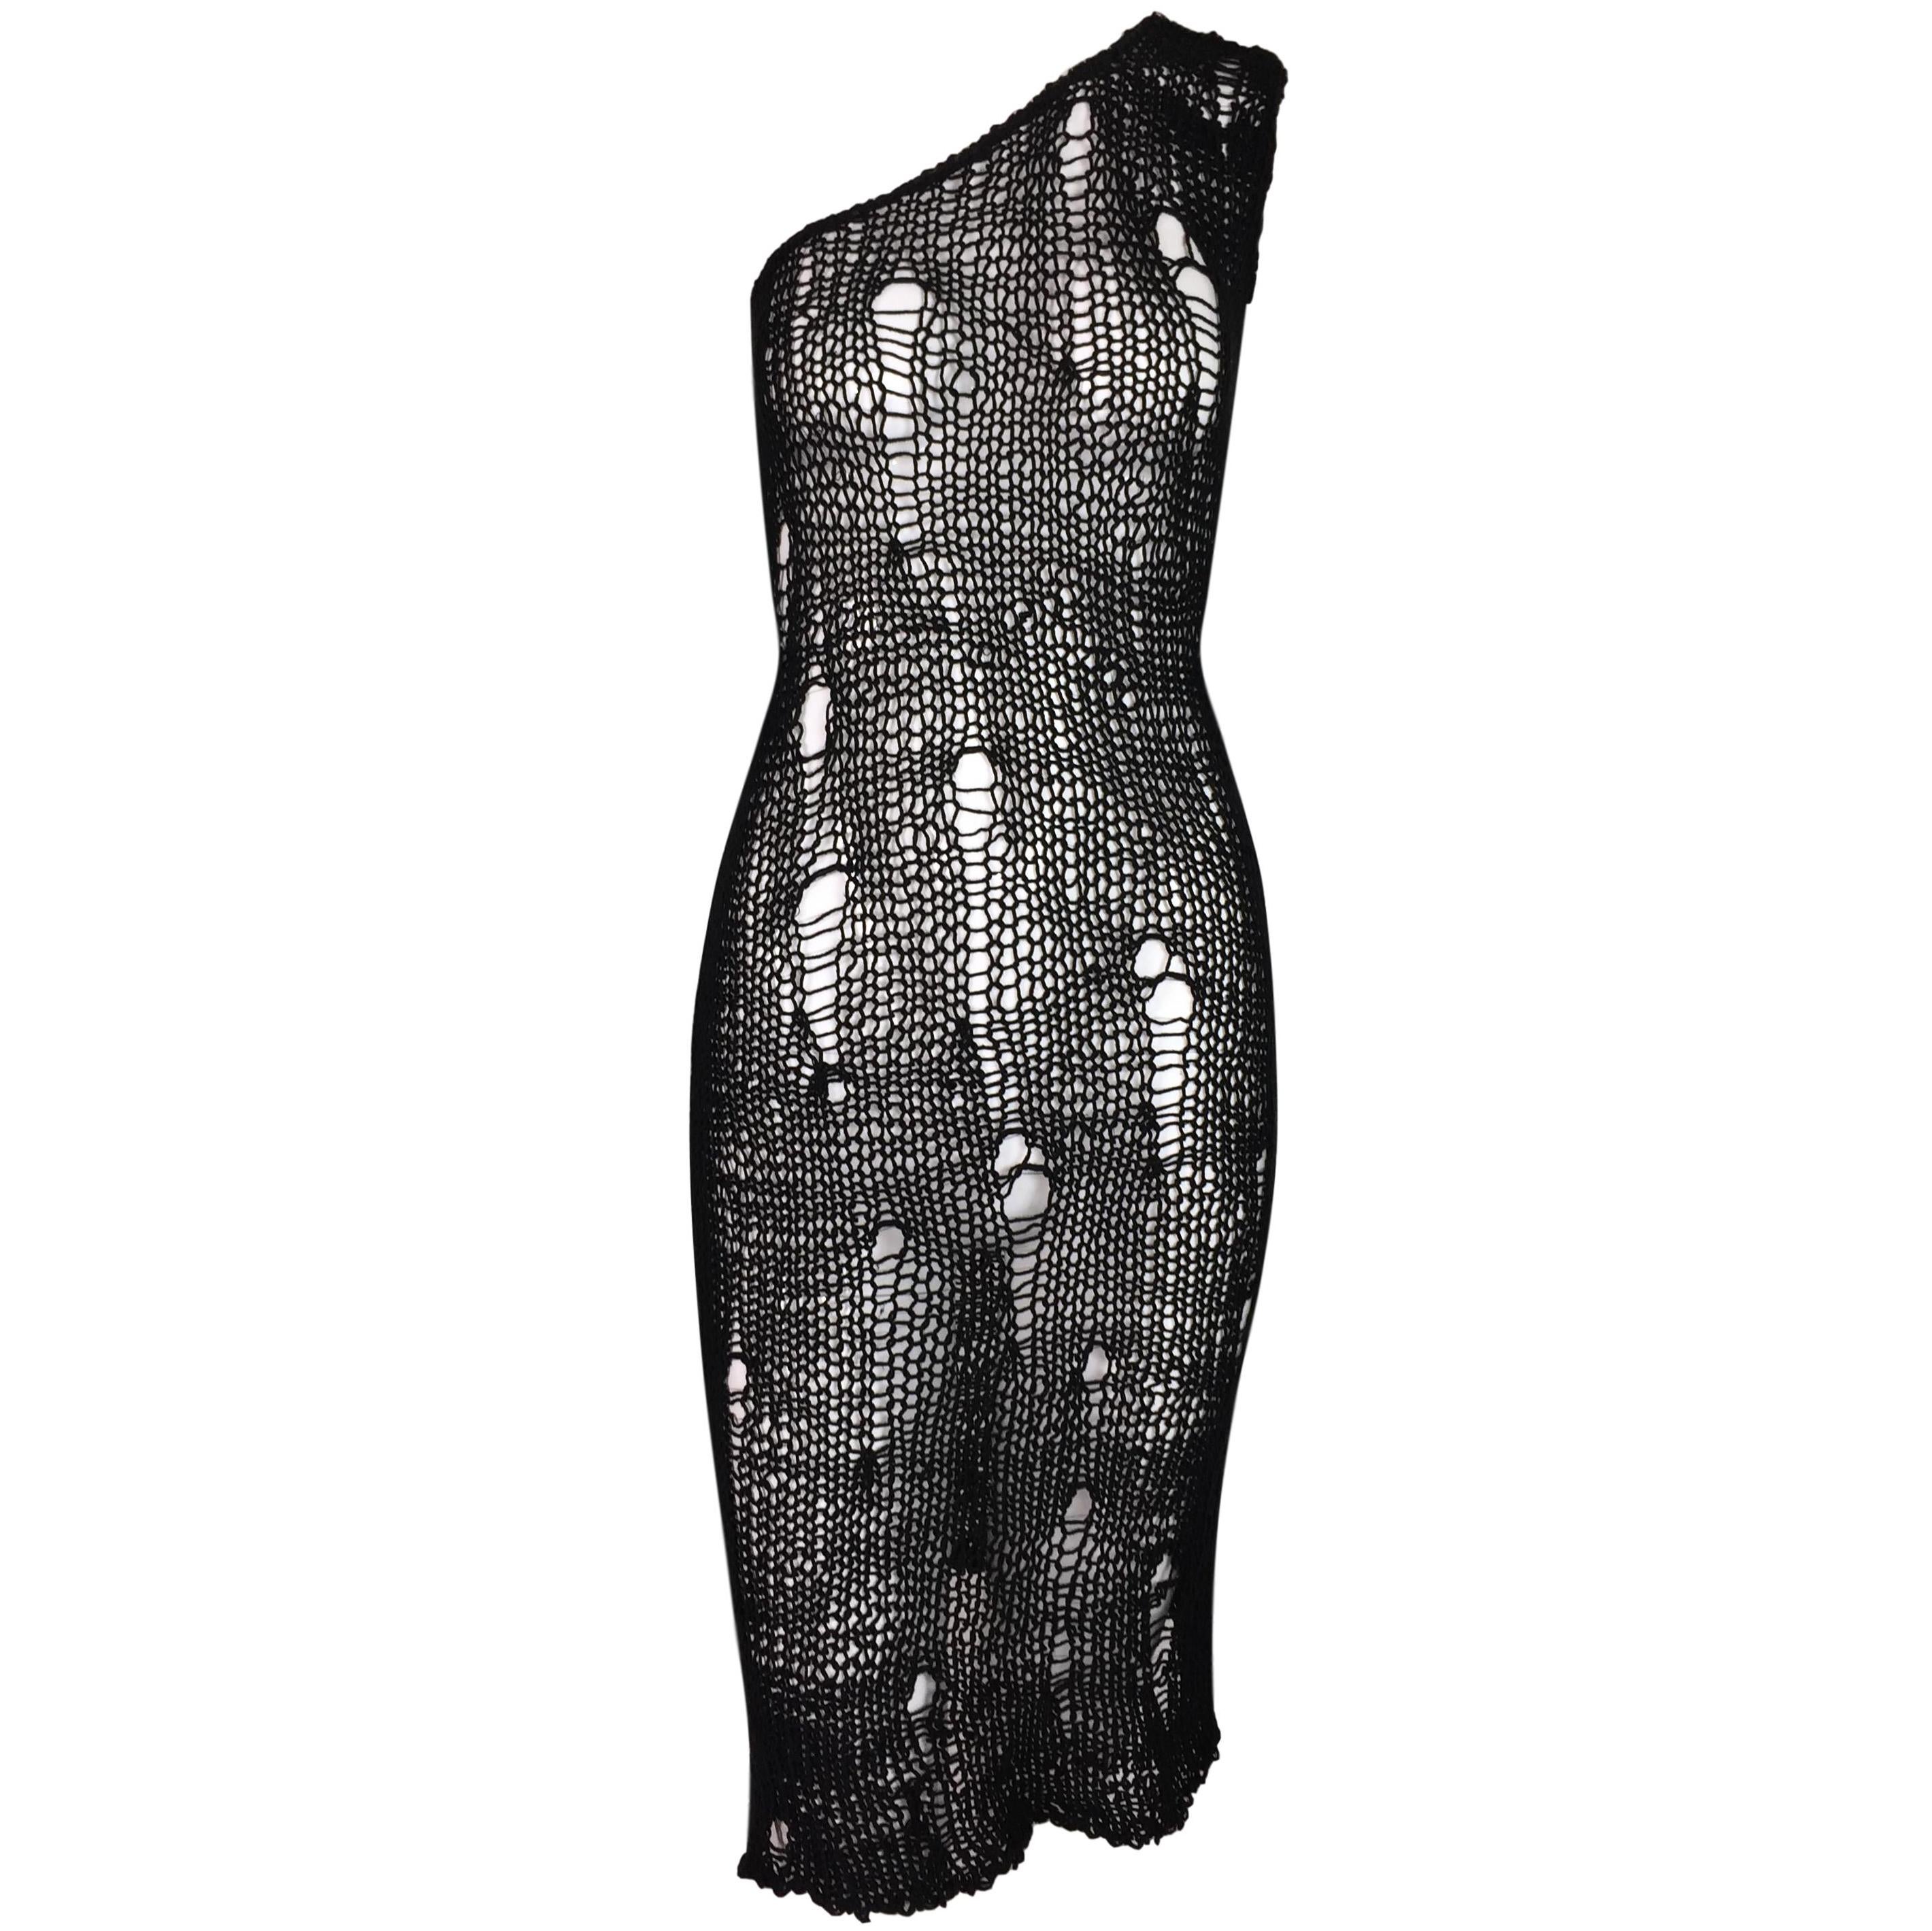 S/S 2003 D&G Dolce & Gabbana Runway Sheer Black Distressed Knit Mini Dress